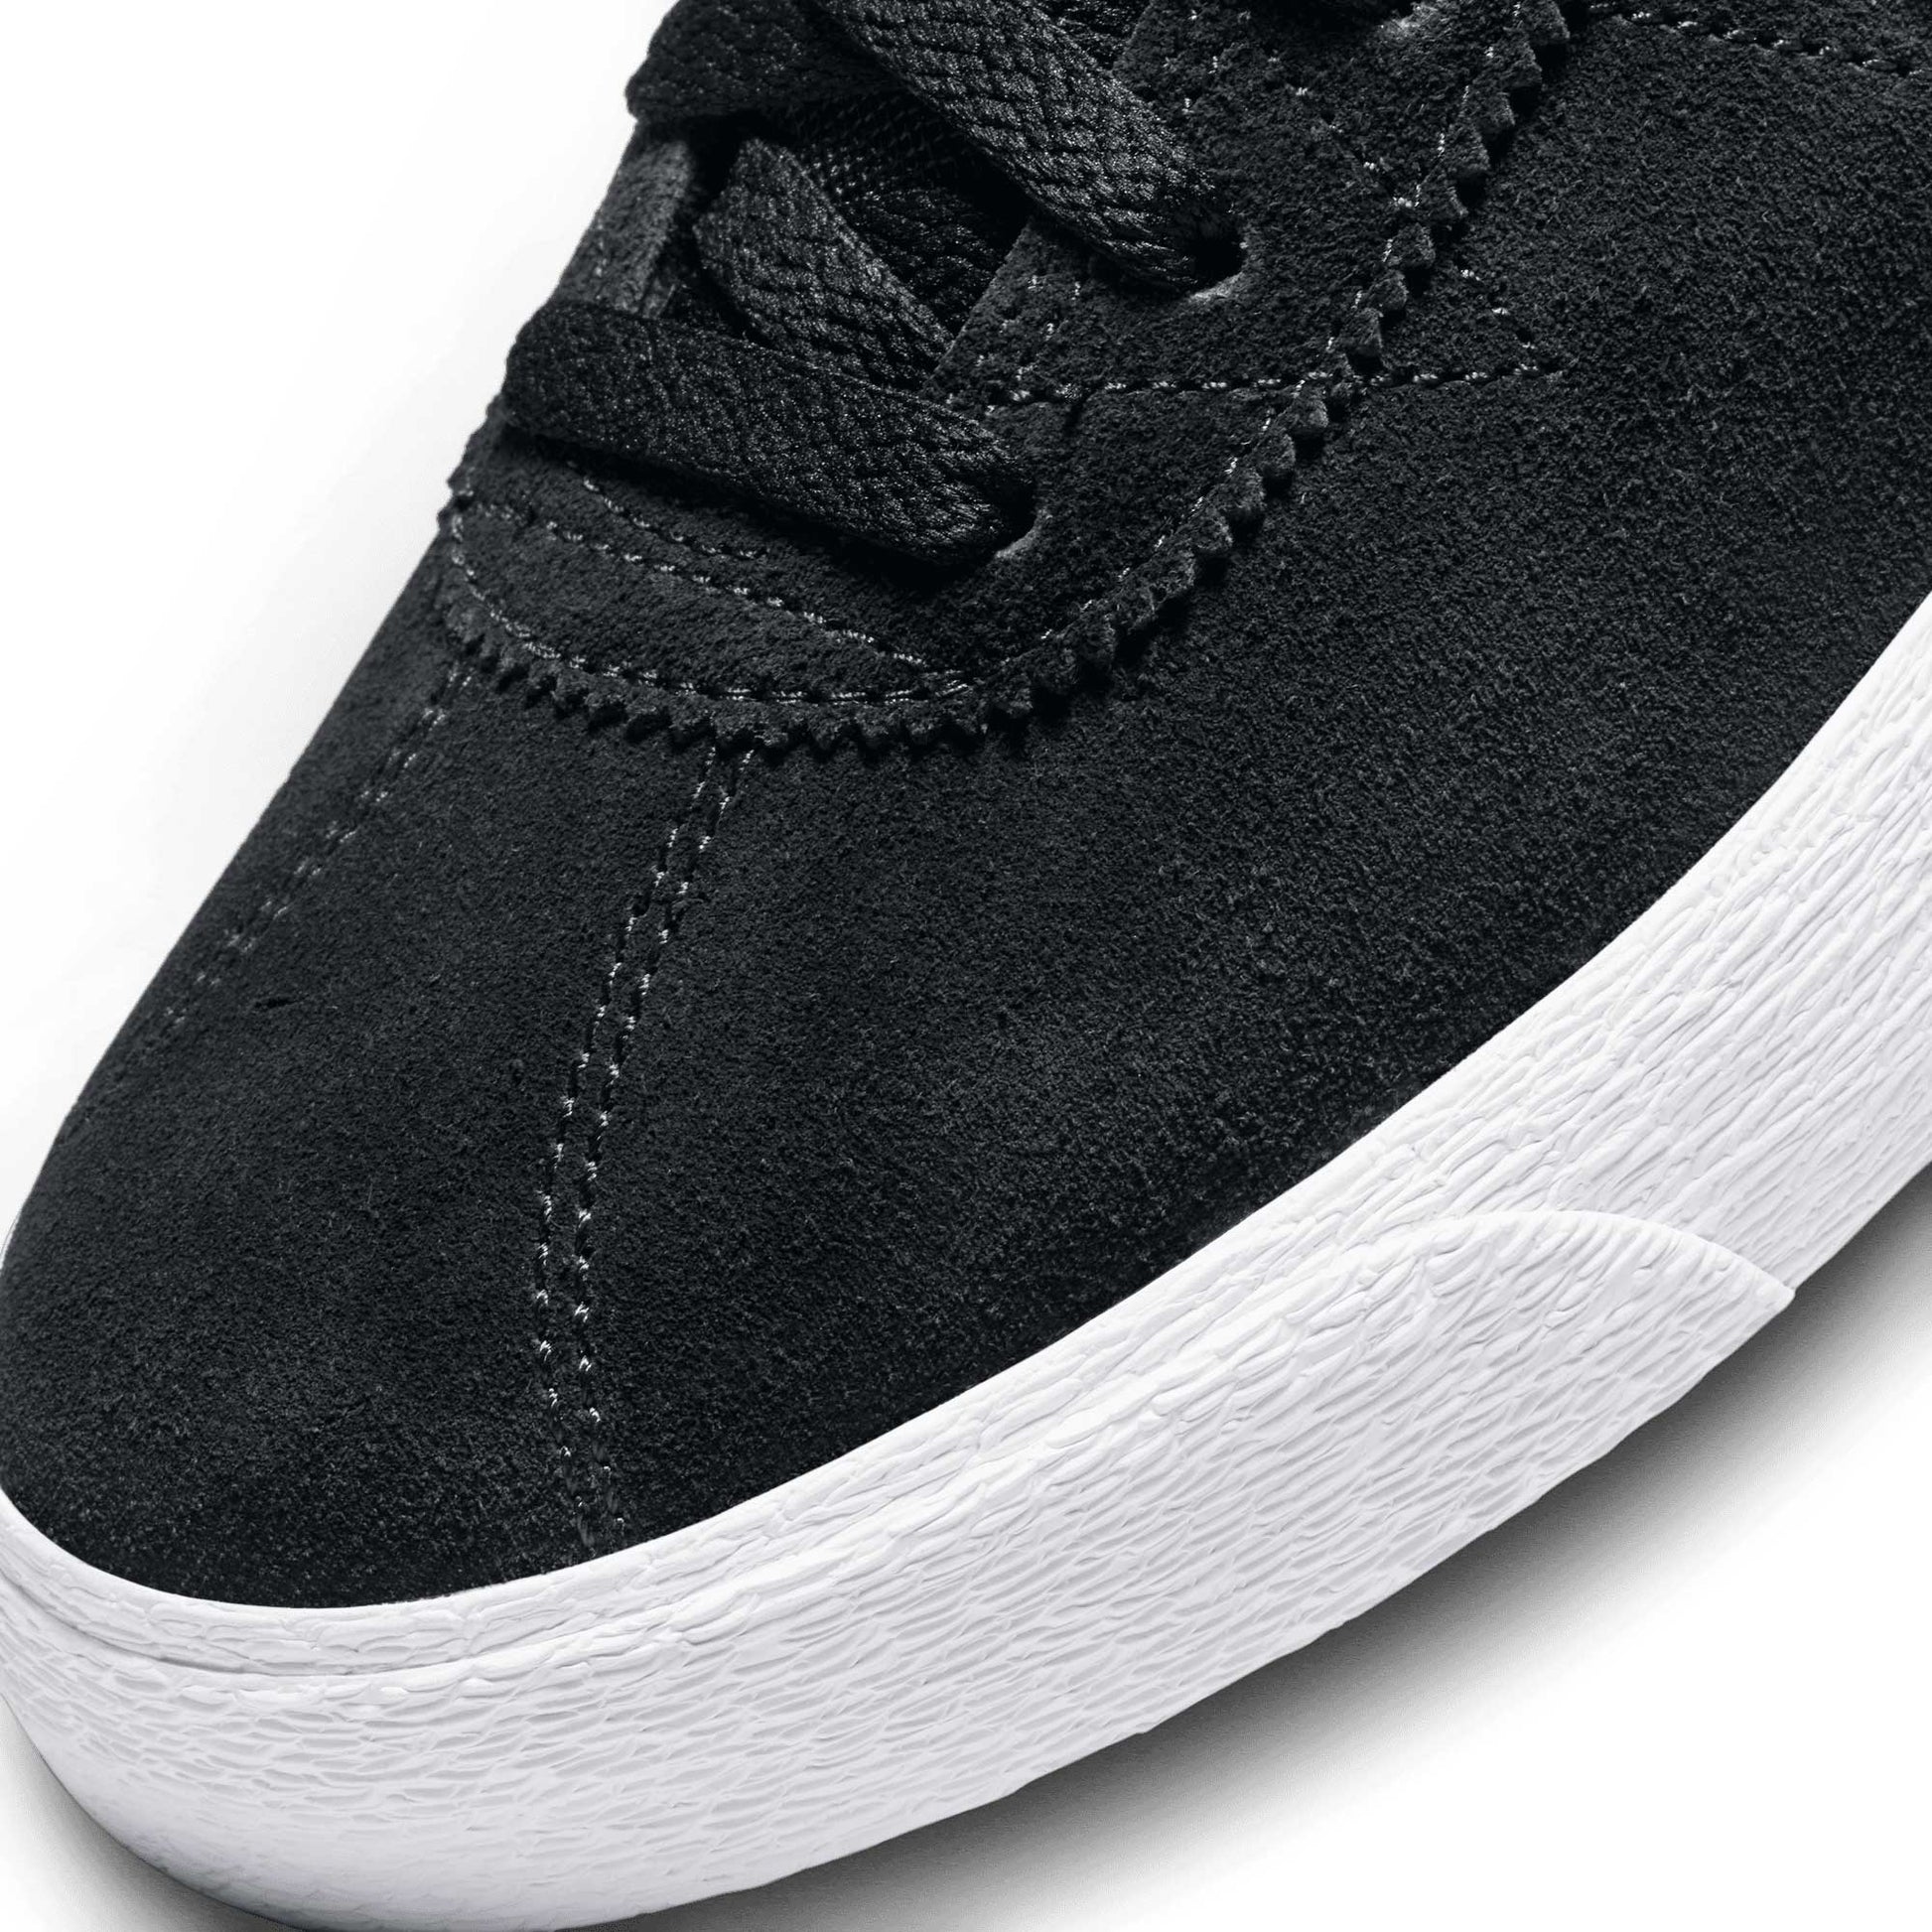 Nike SB Bruin High, black/white-black-gum light brown - Tiki Room Skateboards - 6